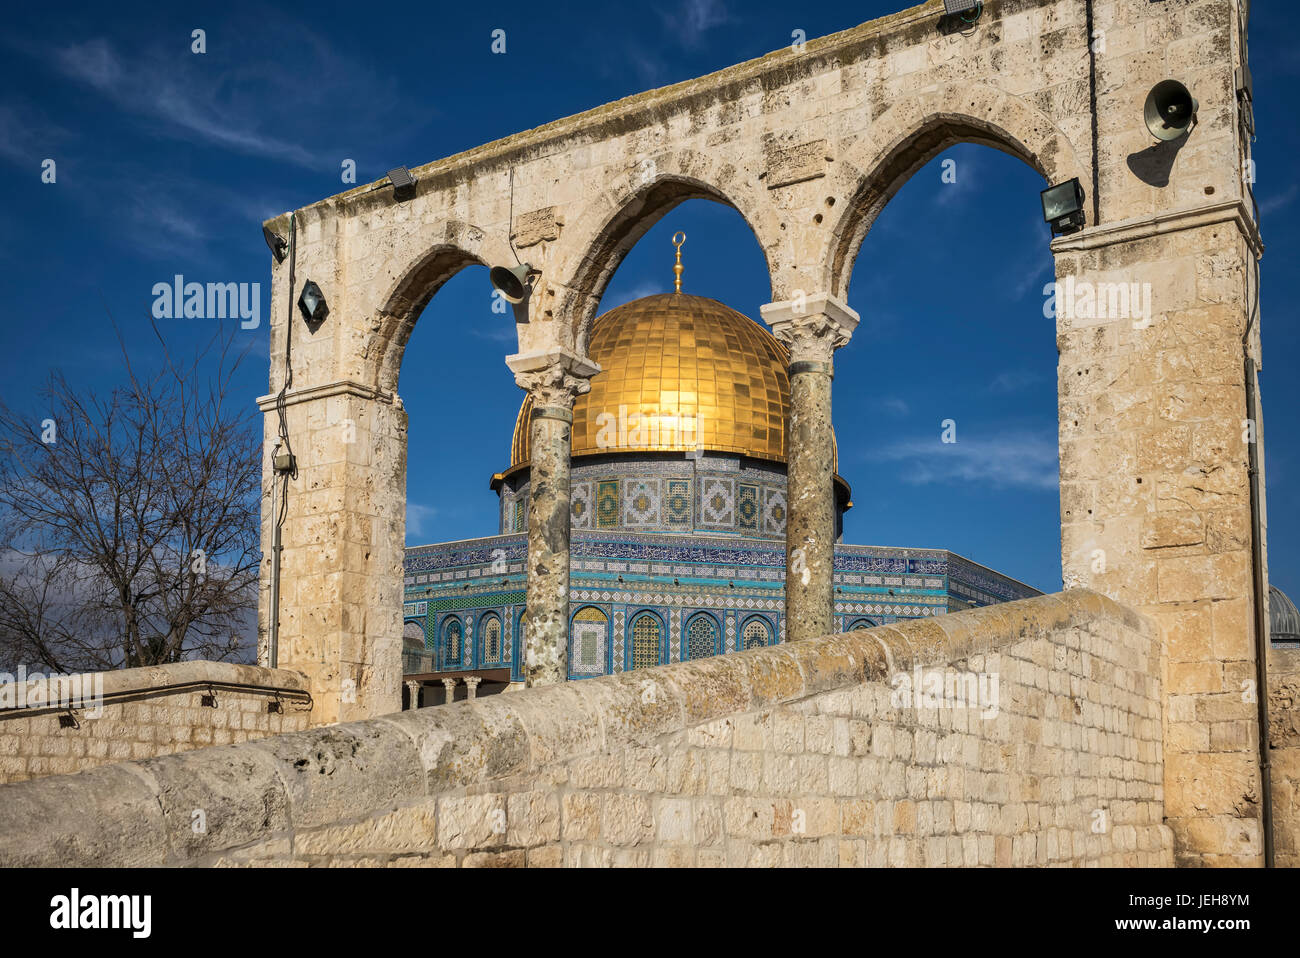 Montagna del Tempio e Cupola della roccia, la Città Vecchia di Gerusalemme. Gerusalemme, Israele Foto Stock